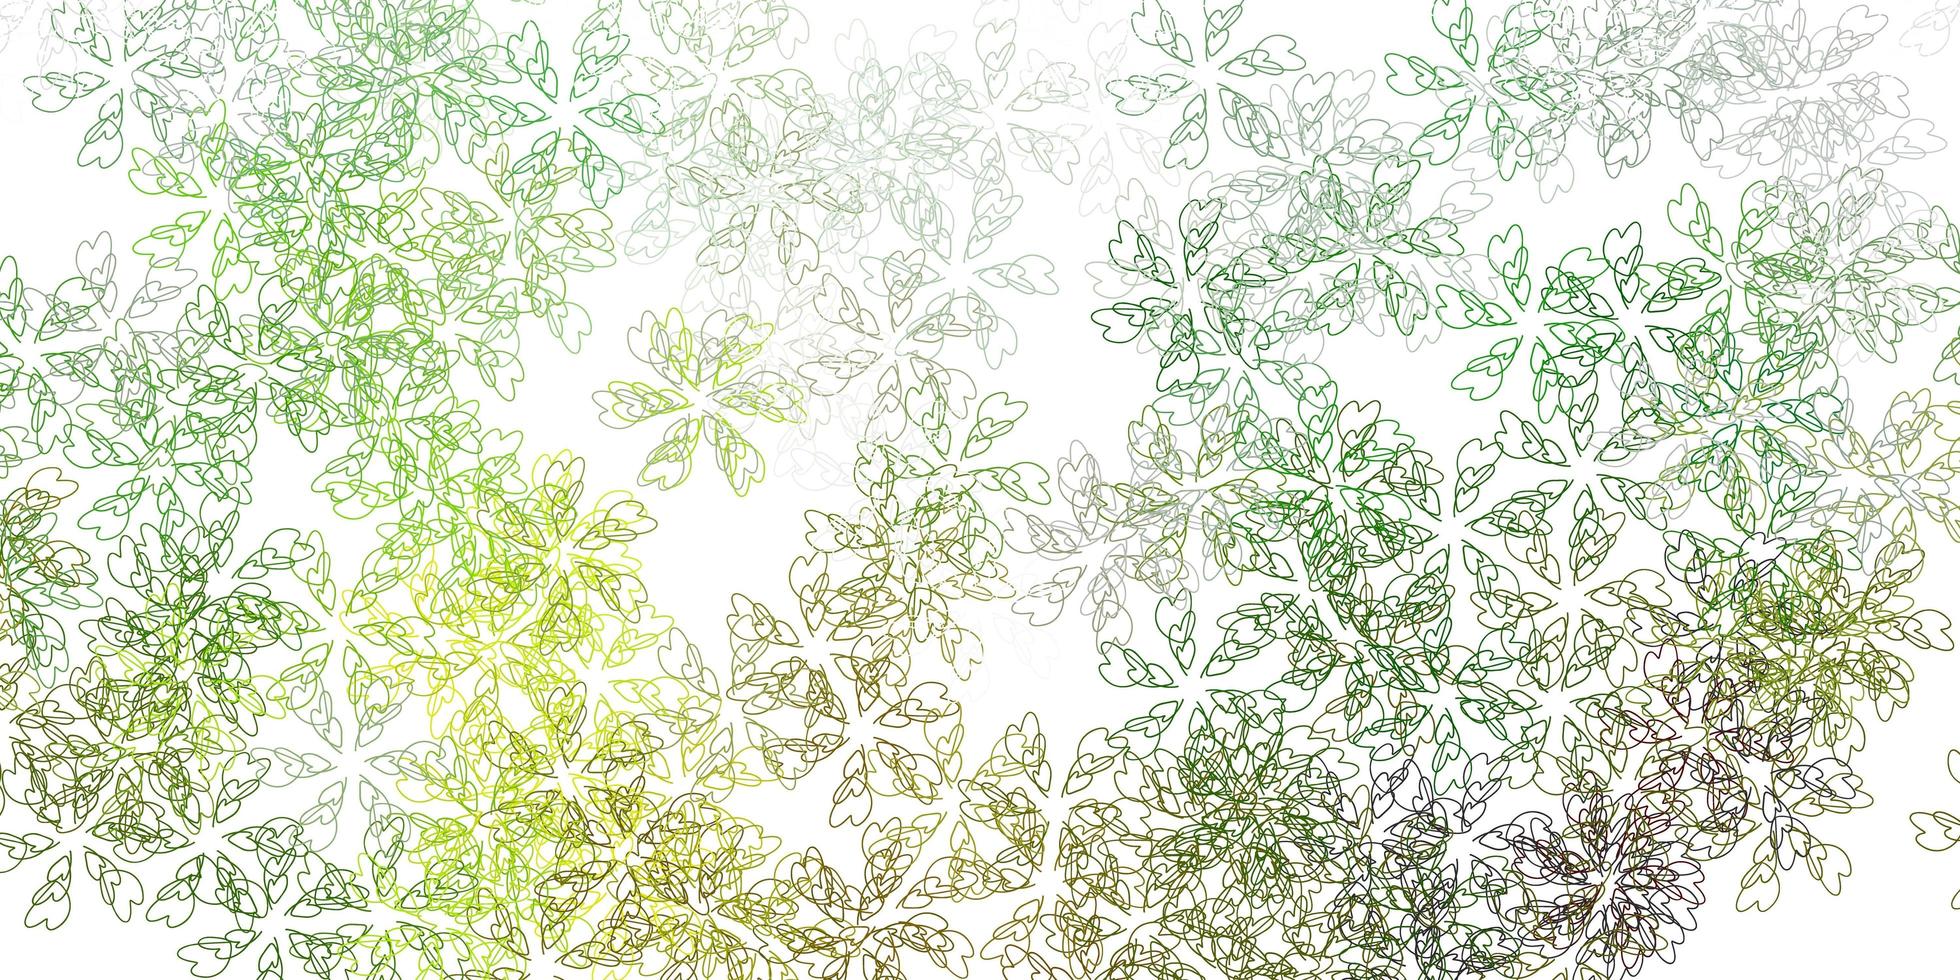 ljusgrön, gul vektor abstrakt bakgrund med blad.